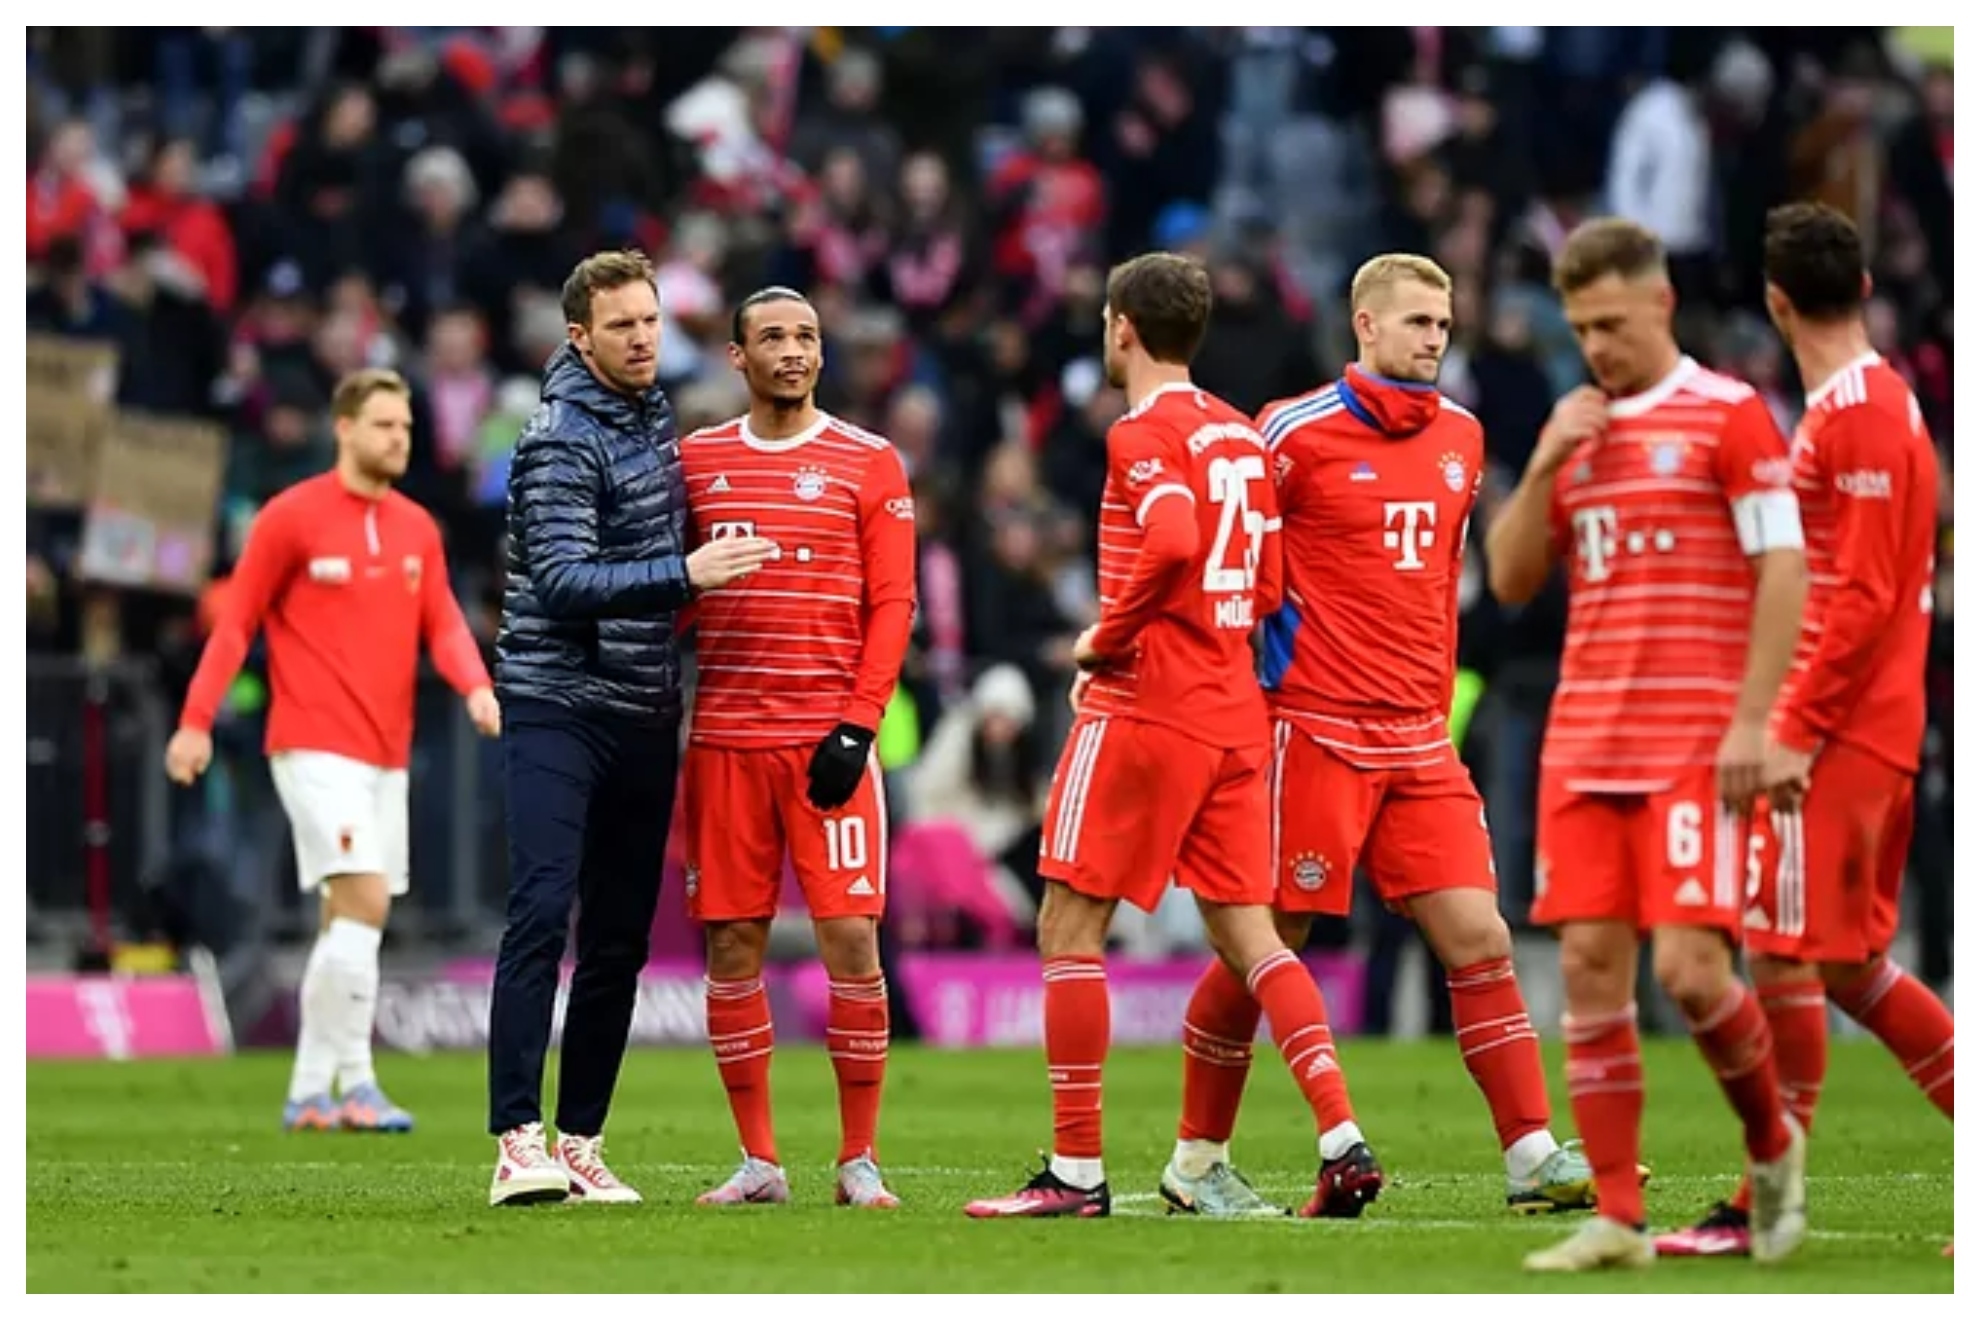 Nagelsmann saluda a Sané en presencia de otros compañeros al final de un partido